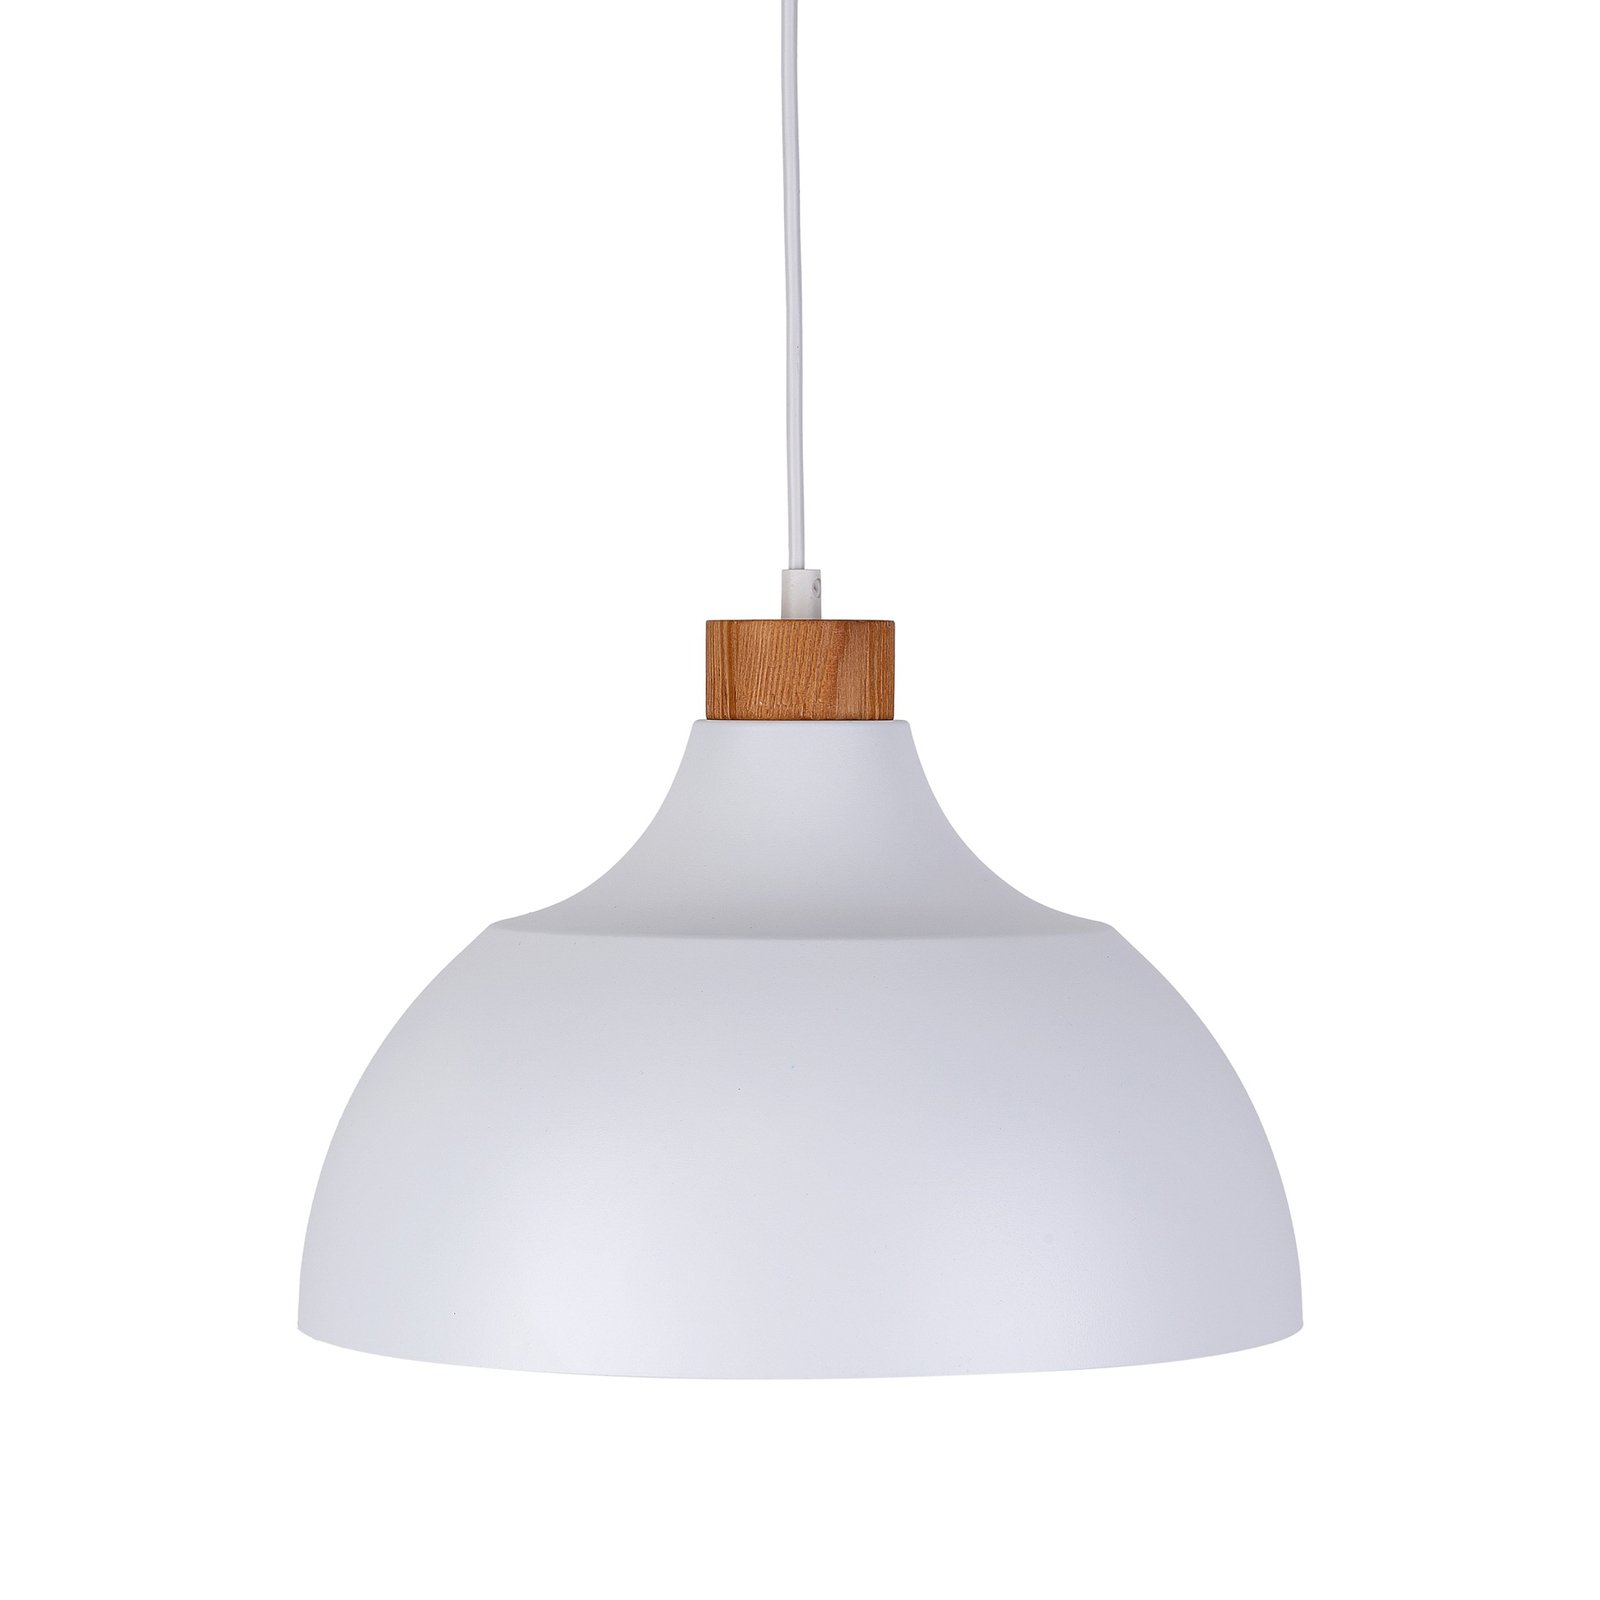 Lampa wisząca Kaitt firmy Envostar, drewniany detal, Ø 34 cm, biała